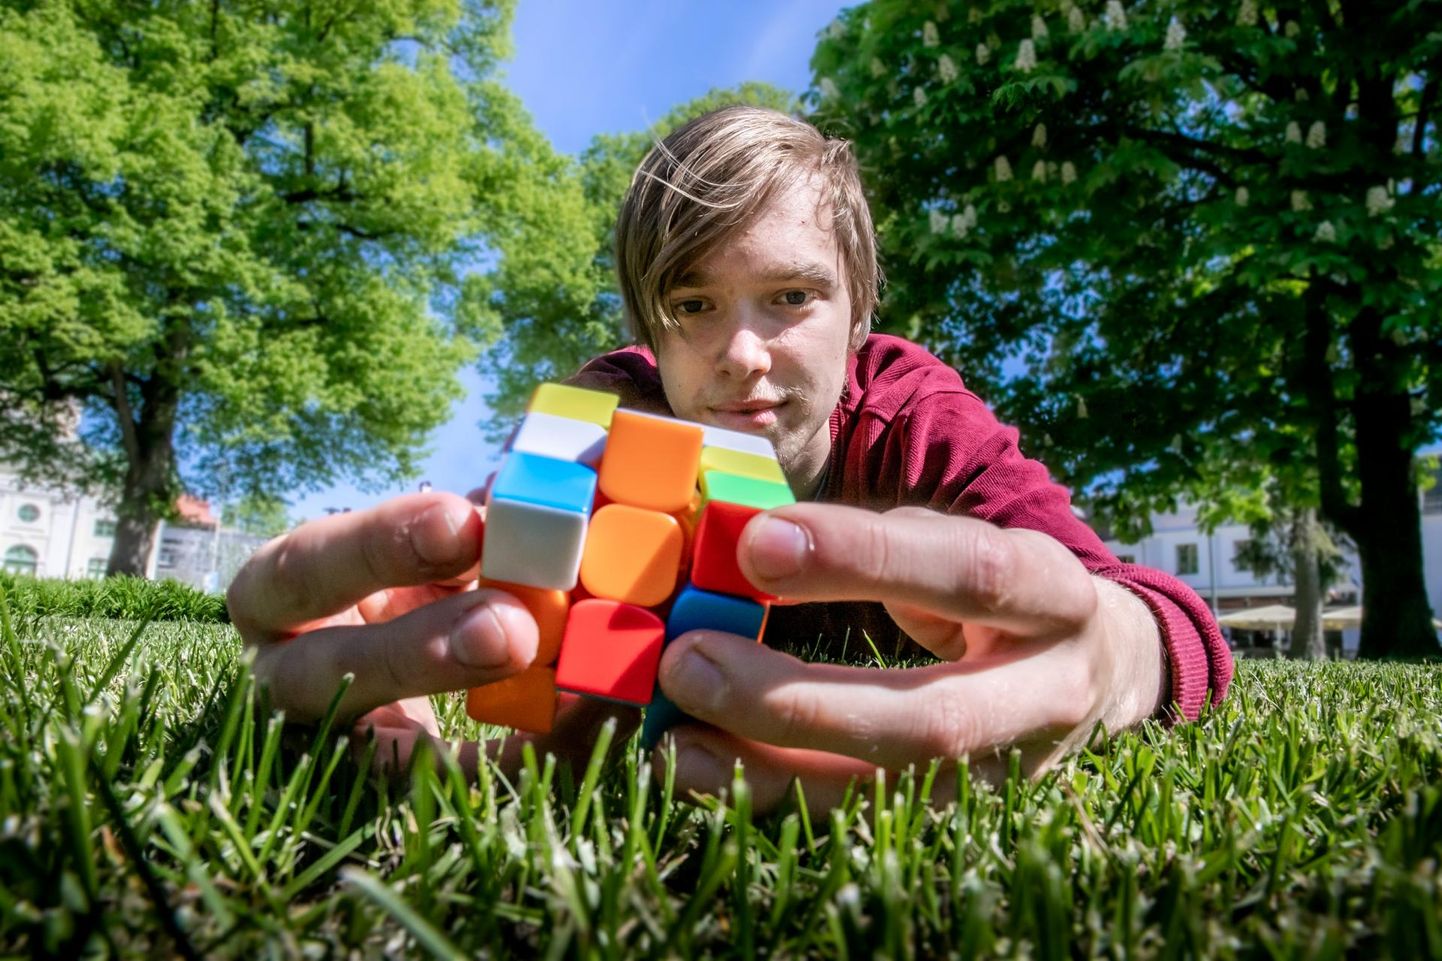 Sel kevadel Are põhikooli lõpetava Leho Hiienurme tulemus Rubiku kuubiku kokkupanemisel valiti eelmise aasta Pärnumaa spordi aasta teoks.